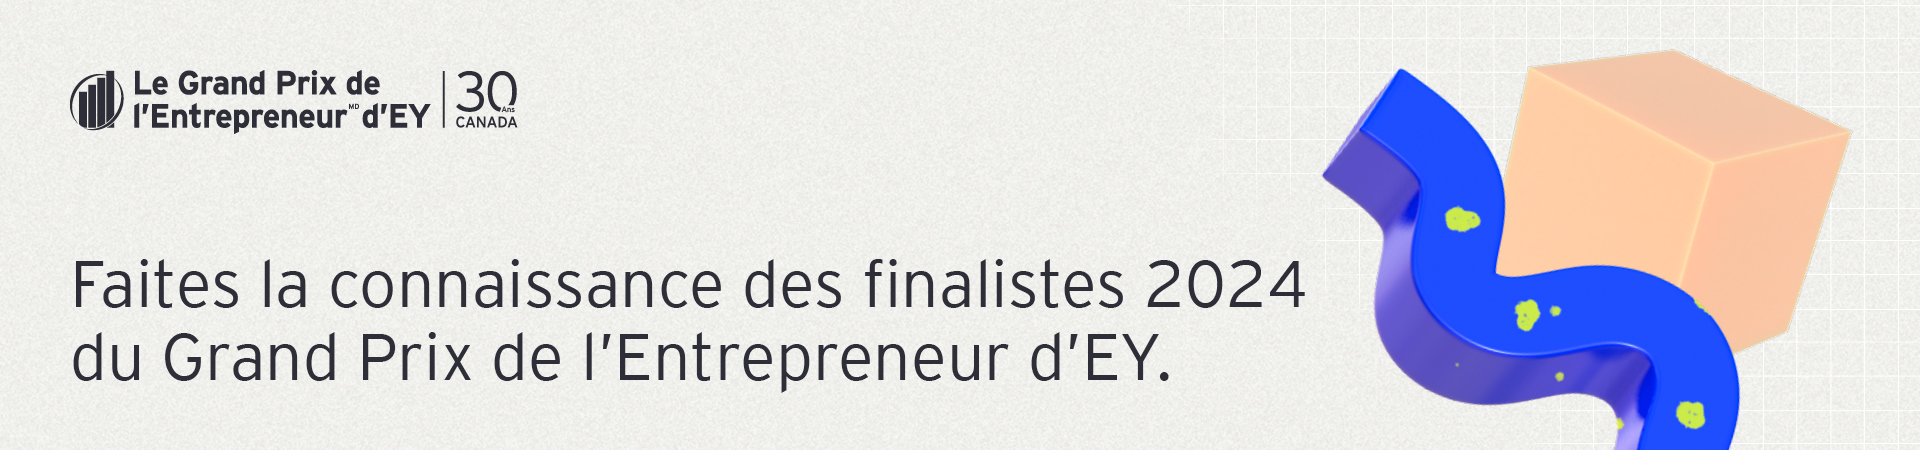 Faites la connaissance des finalistes régionaux du Grand Prix de l’Entrepreneur d’EY 2024 du Canada